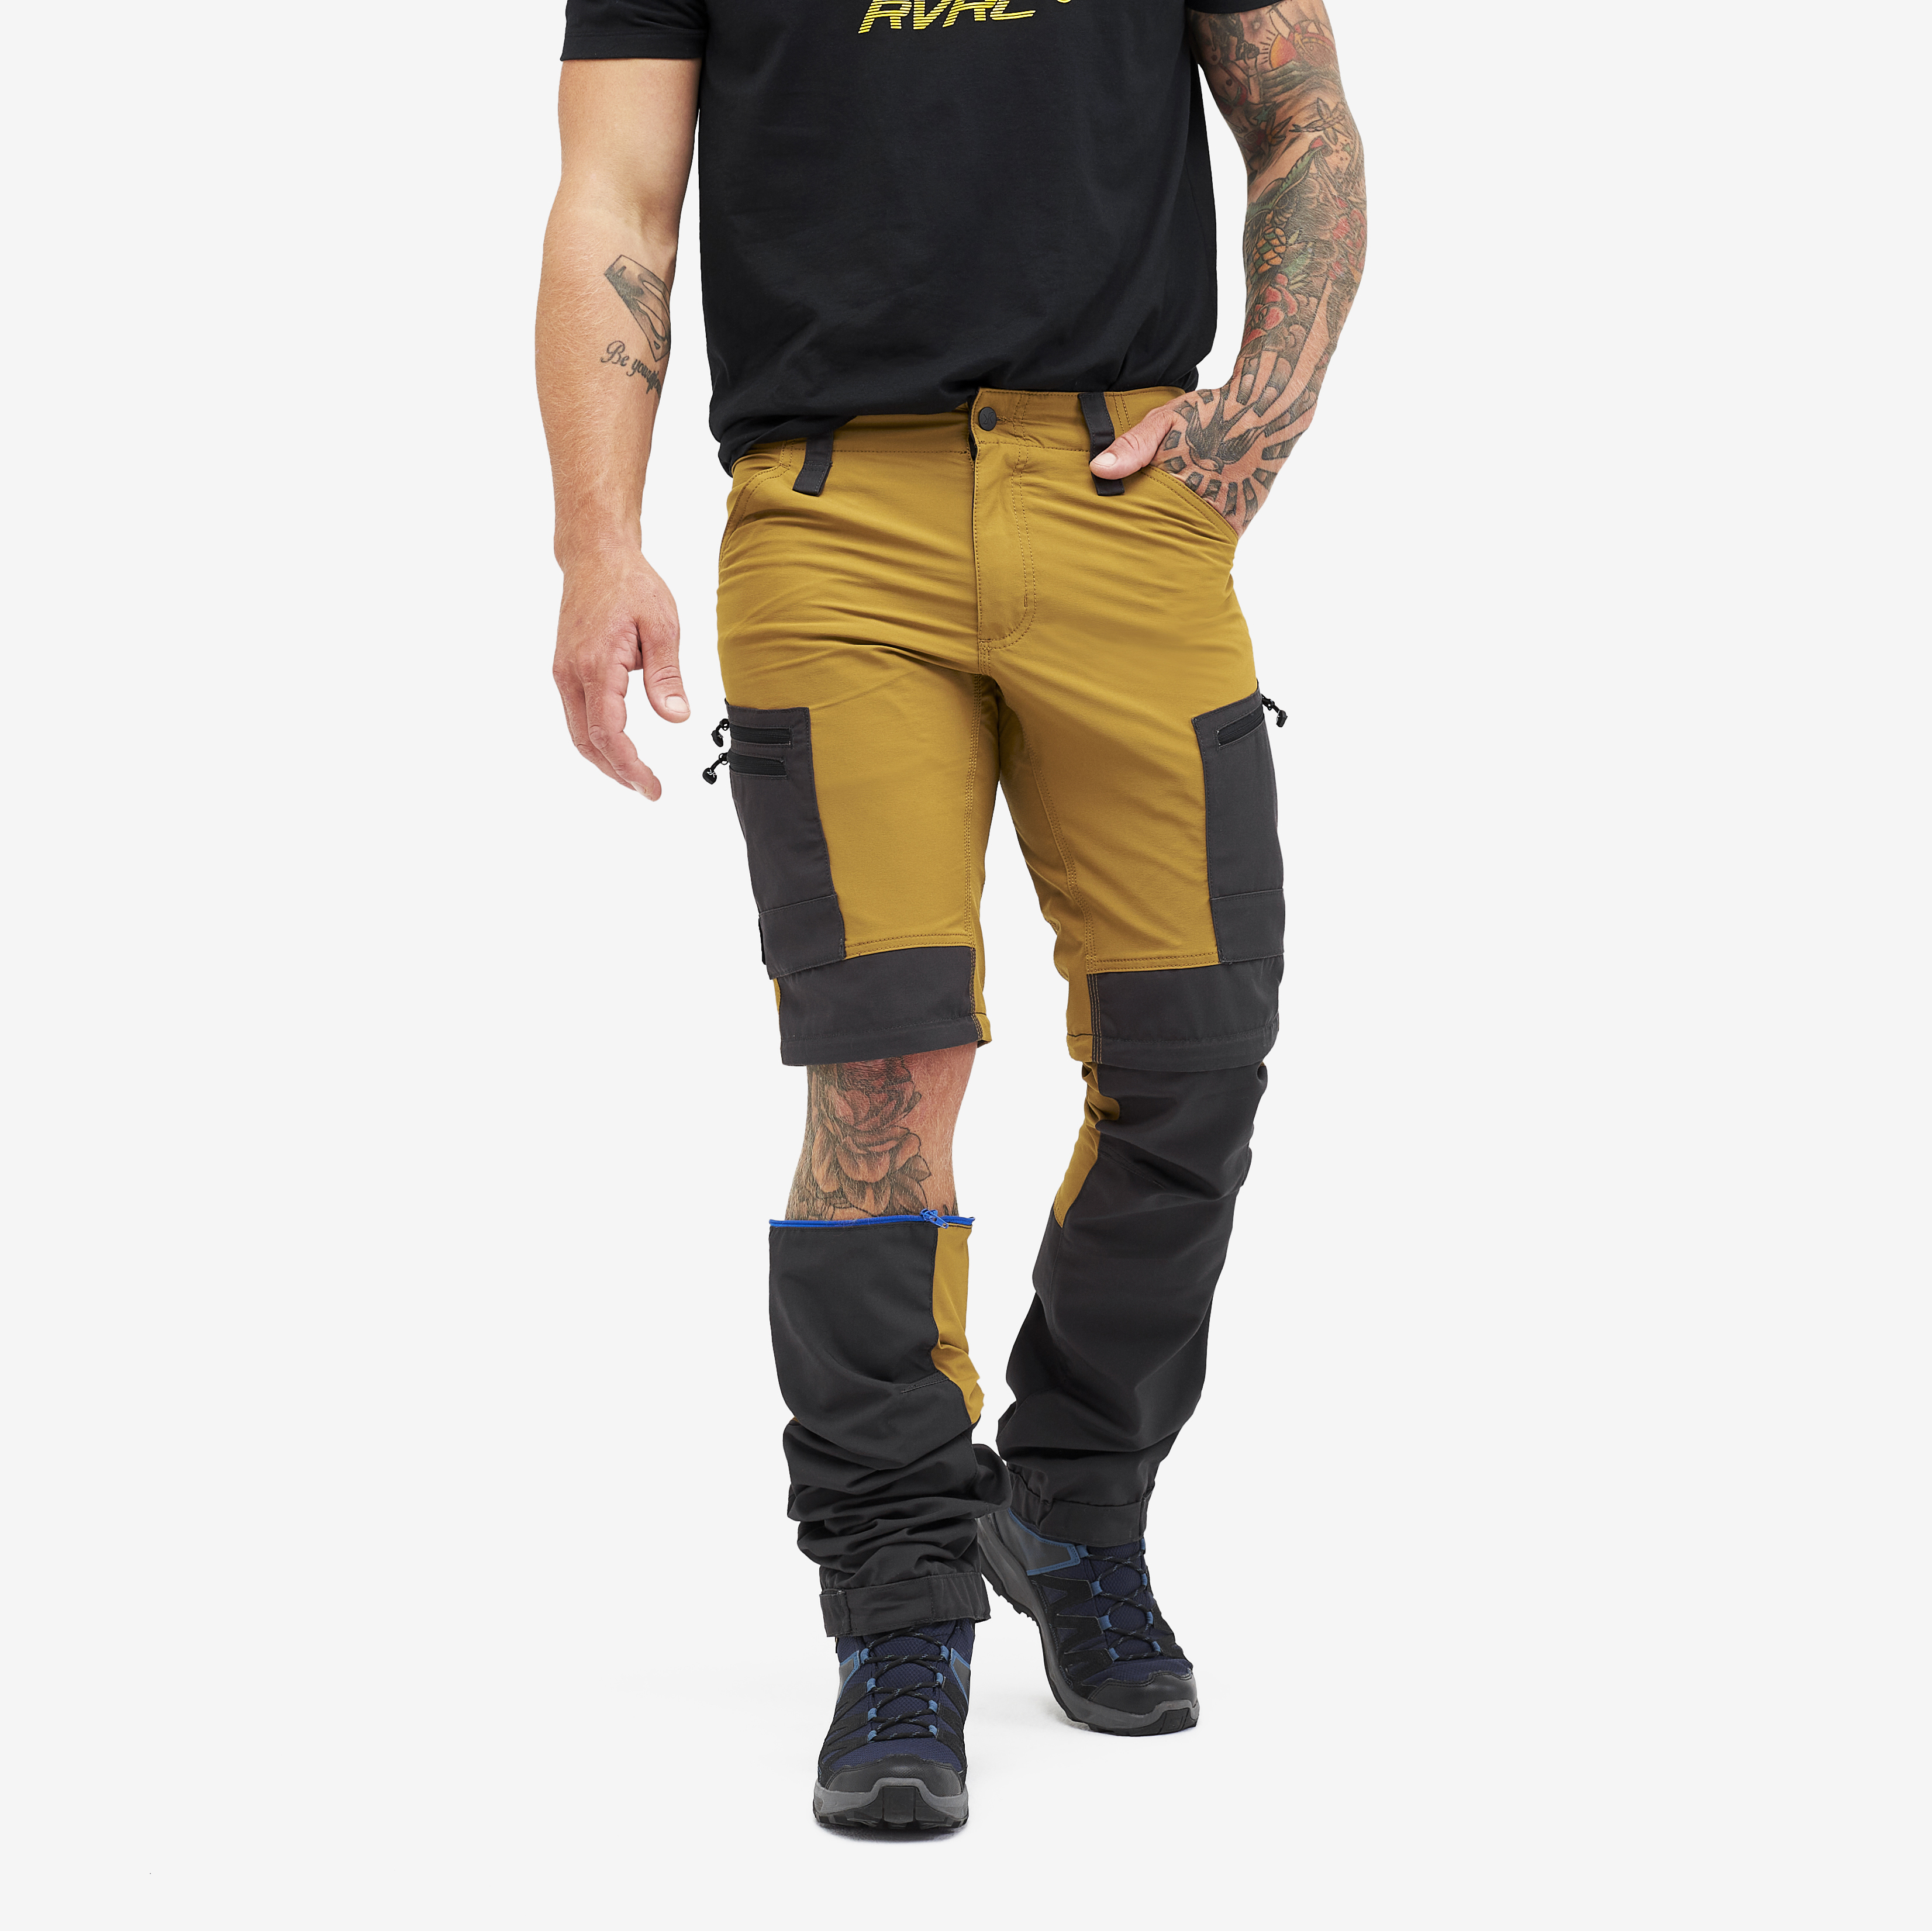 RVRC GP Pro Zip-off spodnie trekkingowe męskie żółty